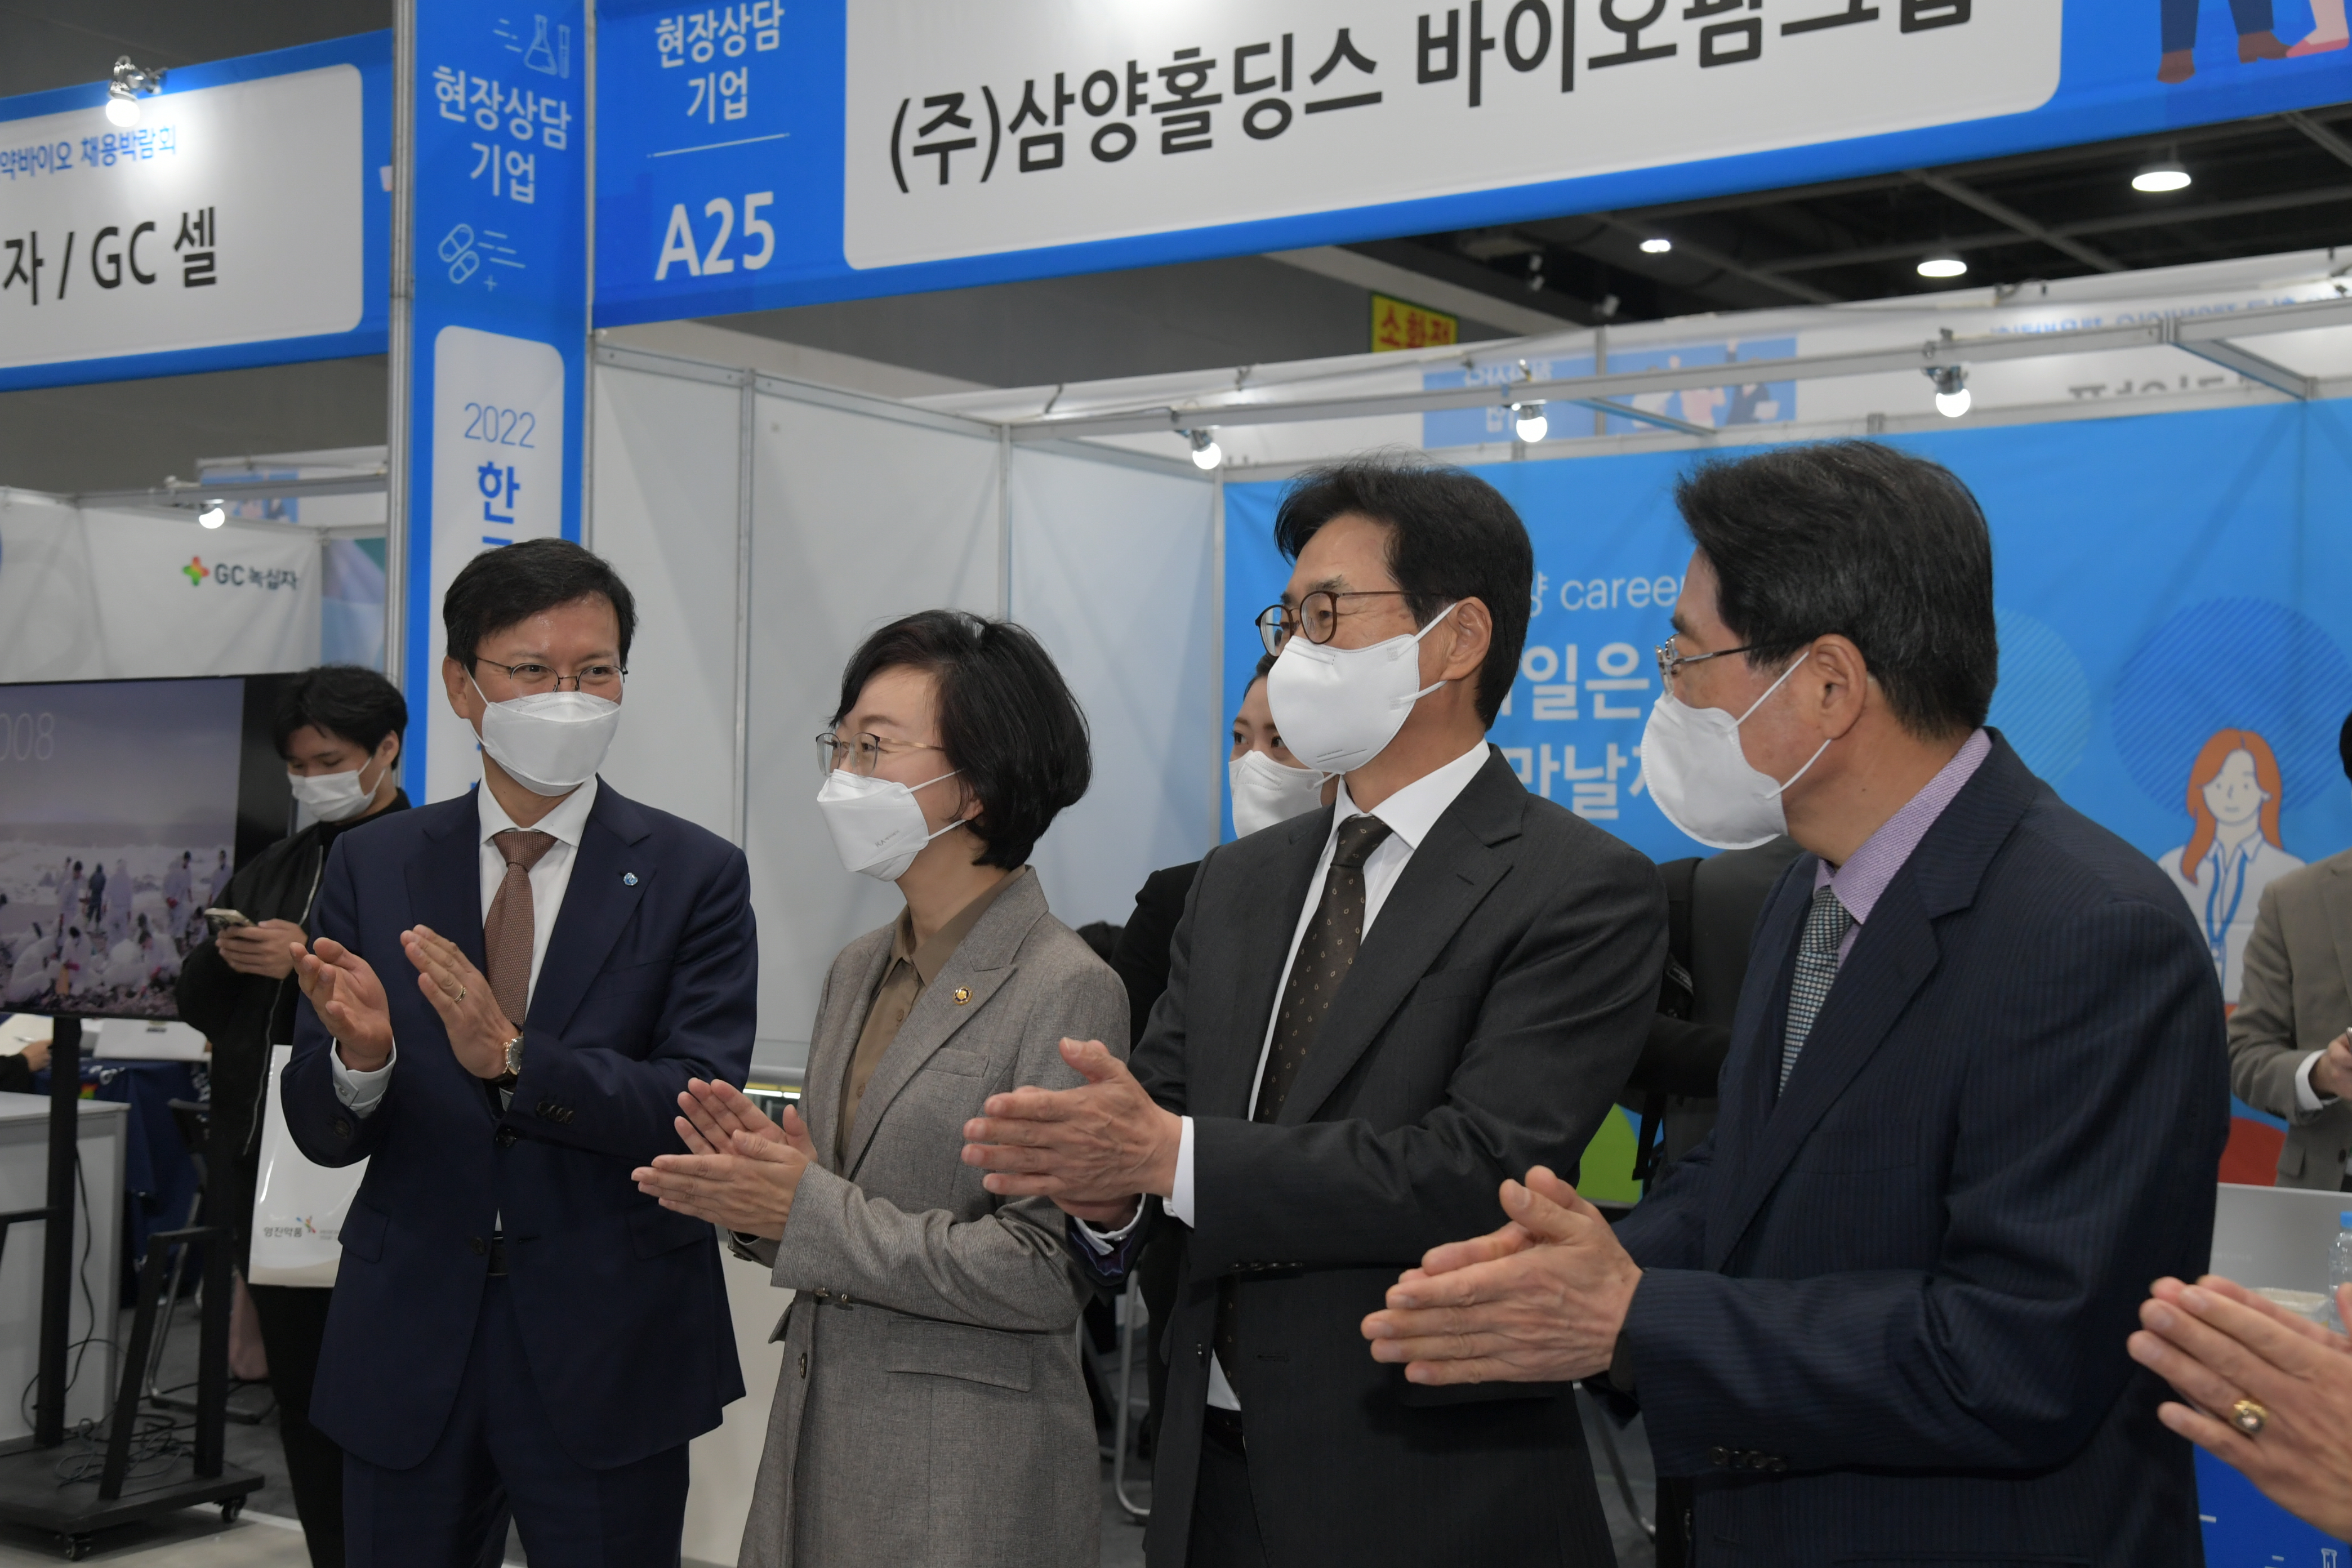 Photo News5 - [Oct. 11, 2022] Minister Attends Korea Bio Job Fair 2022